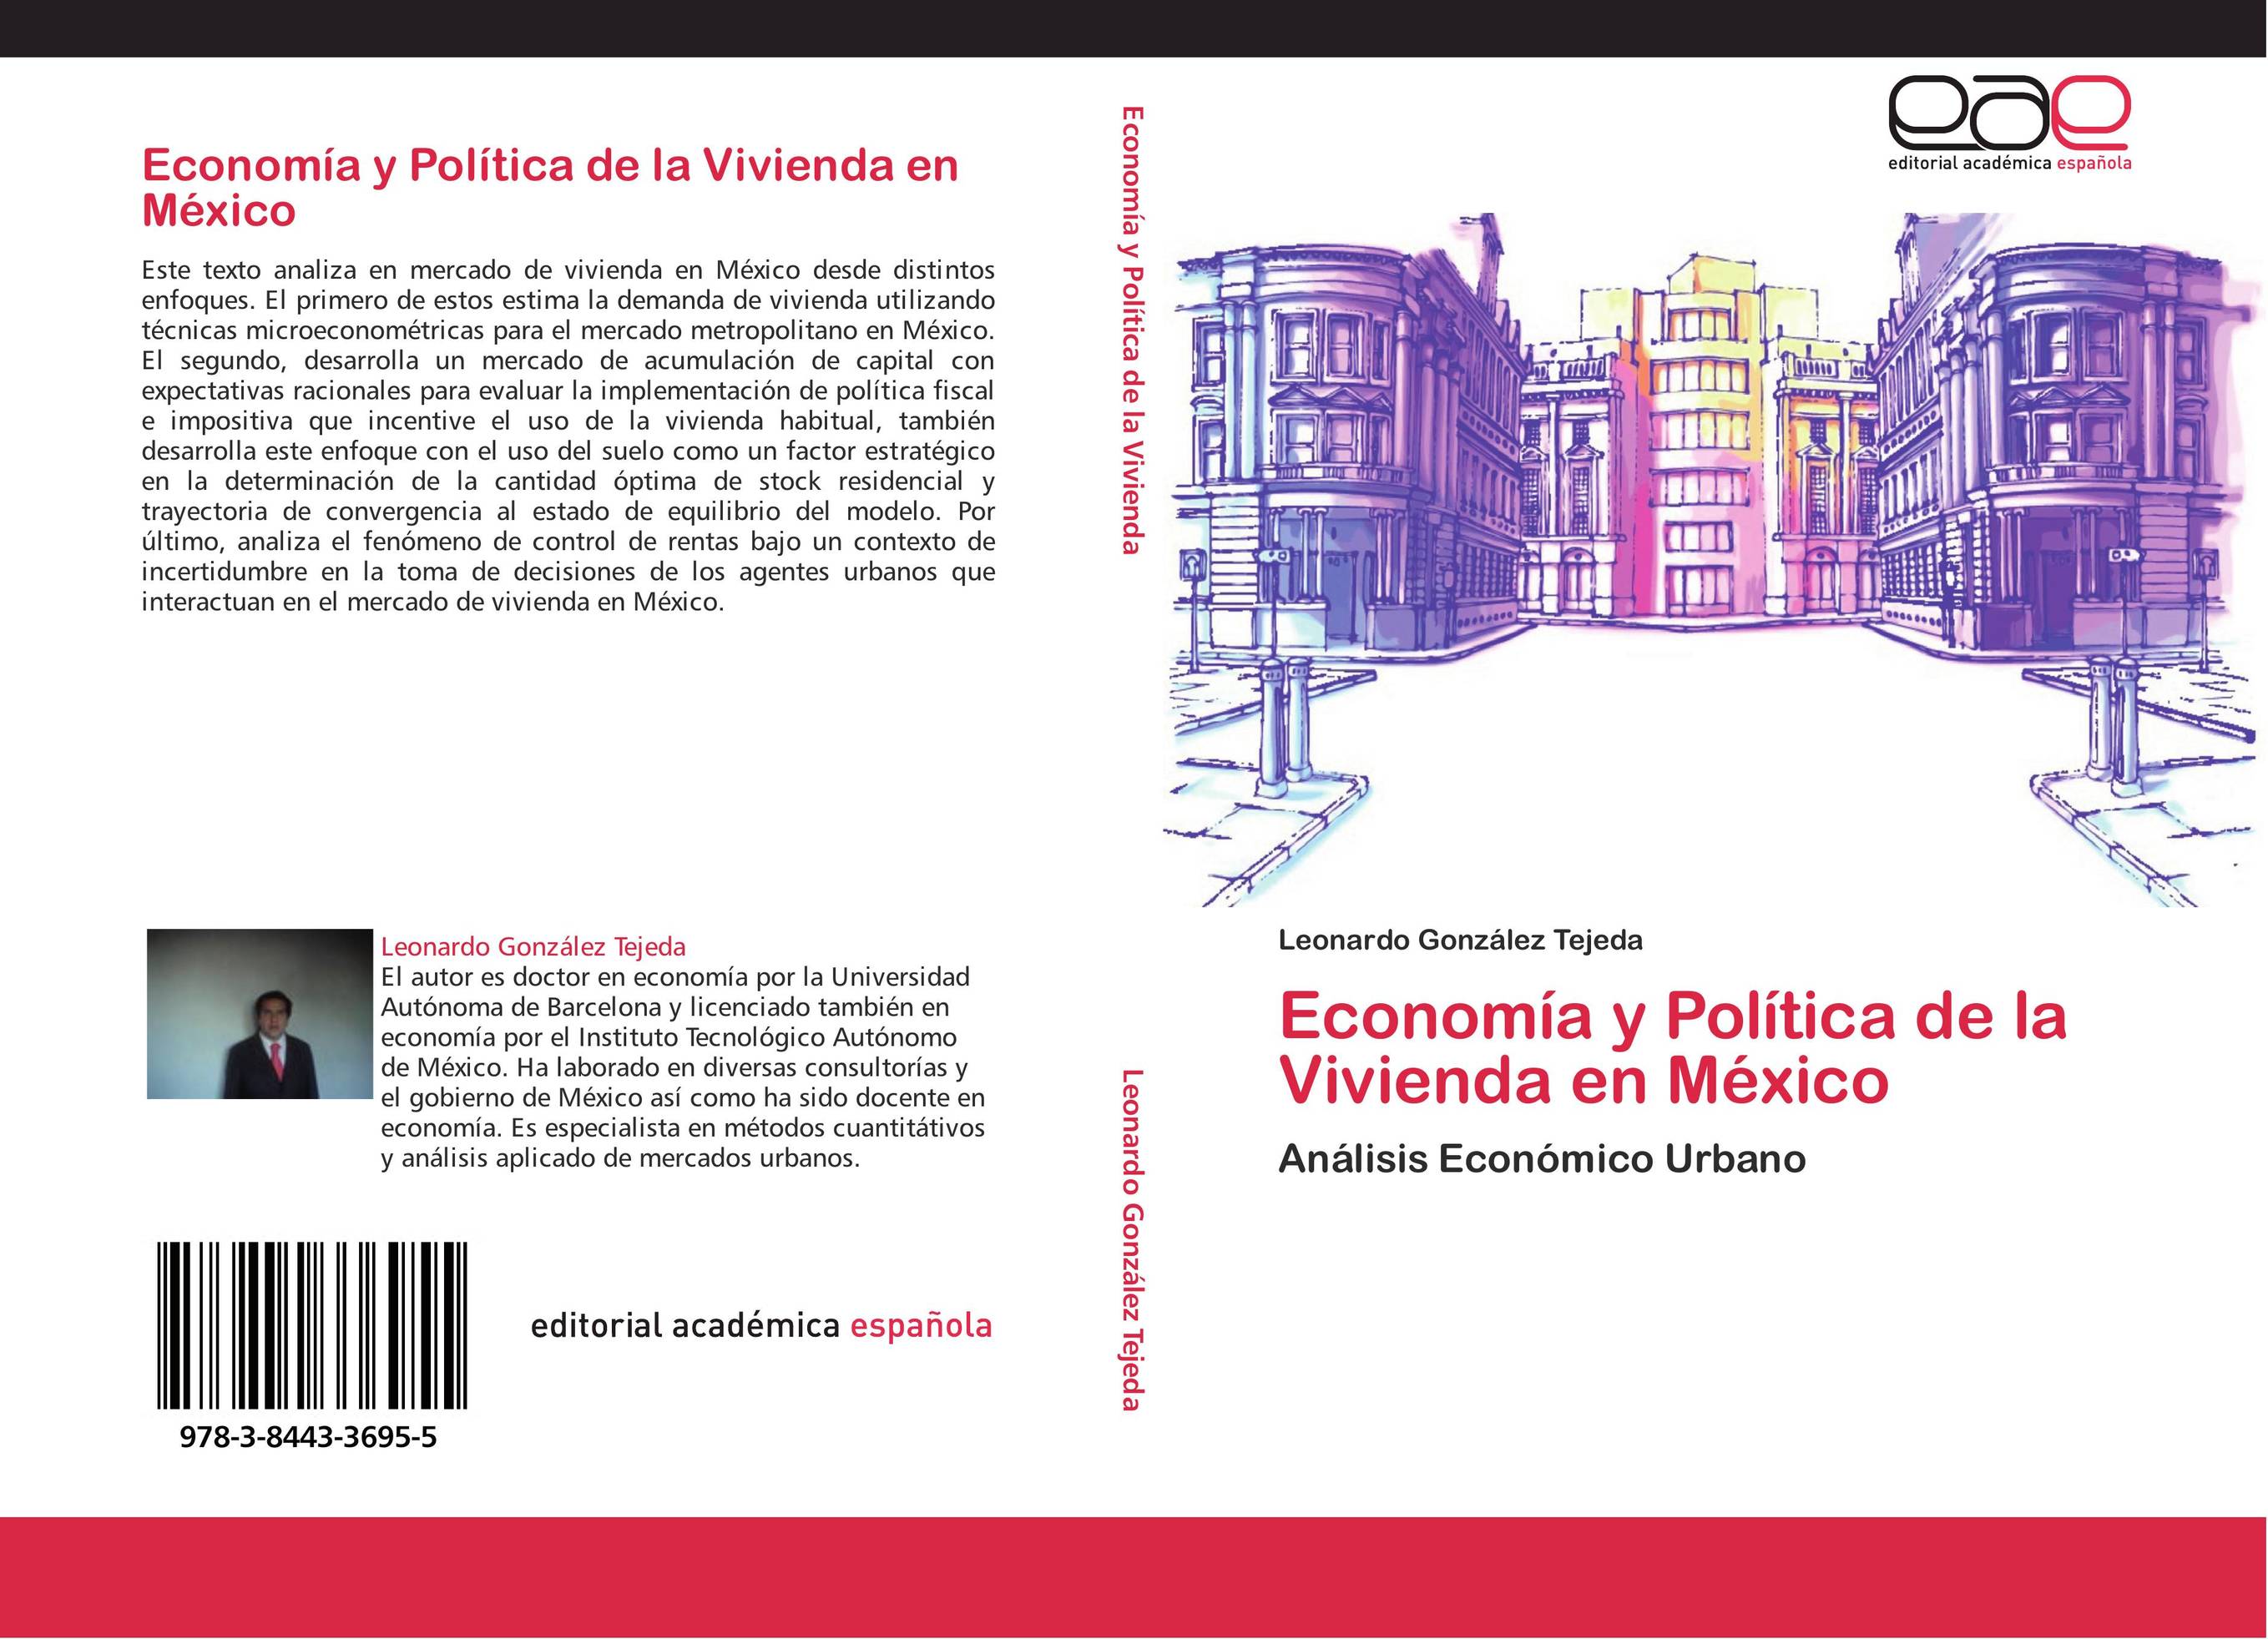 Economía y Política de la Vivienda en México